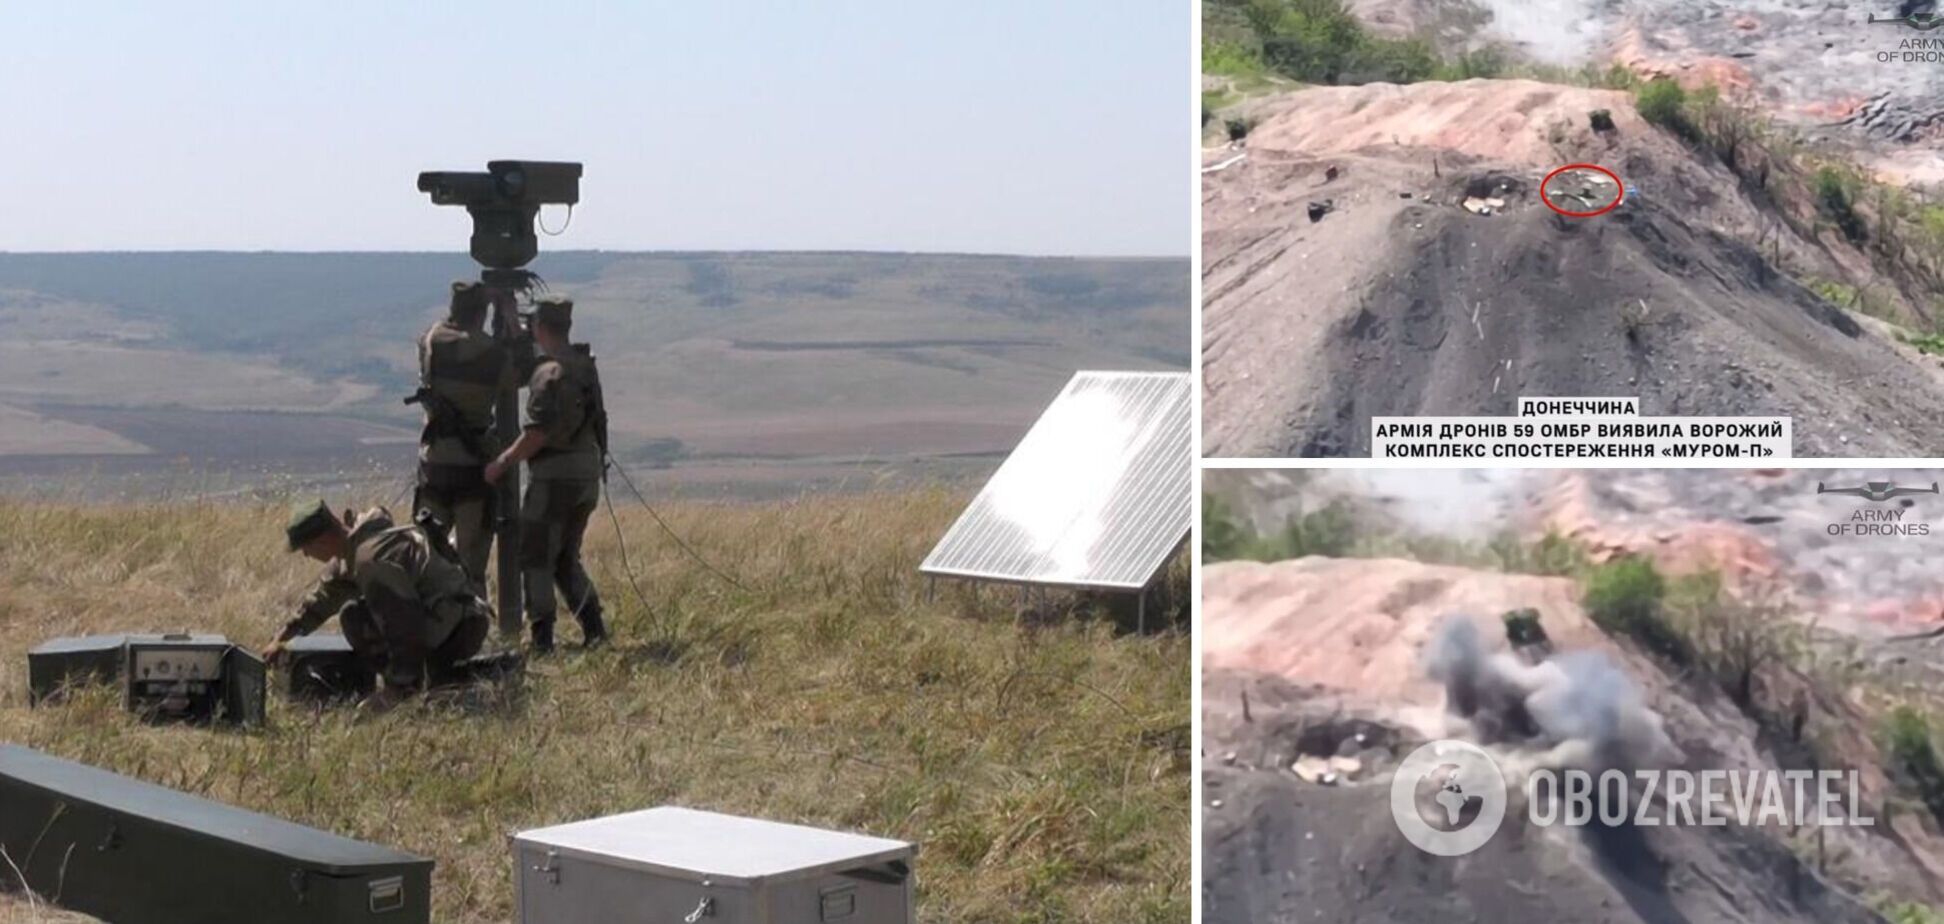 'Глаз Мордора': ВСУ оставили армию России без еще одного комплекса наблюдения 'Муром-П'. Видео